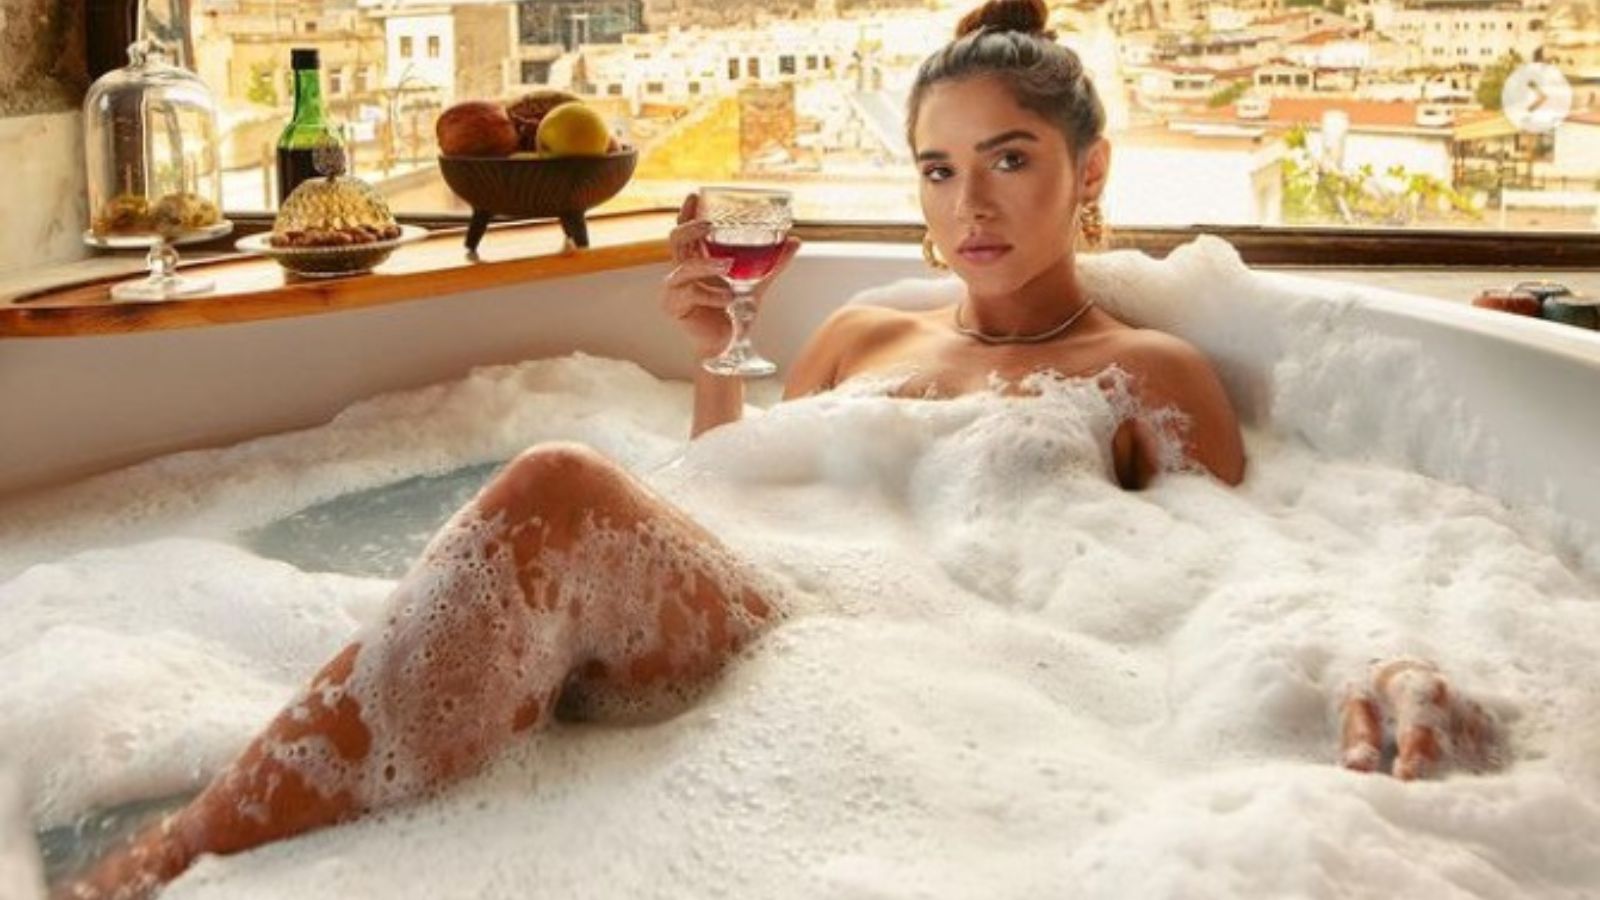 Ex-BBB Gizelly Bicalho posa nua em banheira e deixa seguidores boquiabertos: ‘Deusa da Capadócia’